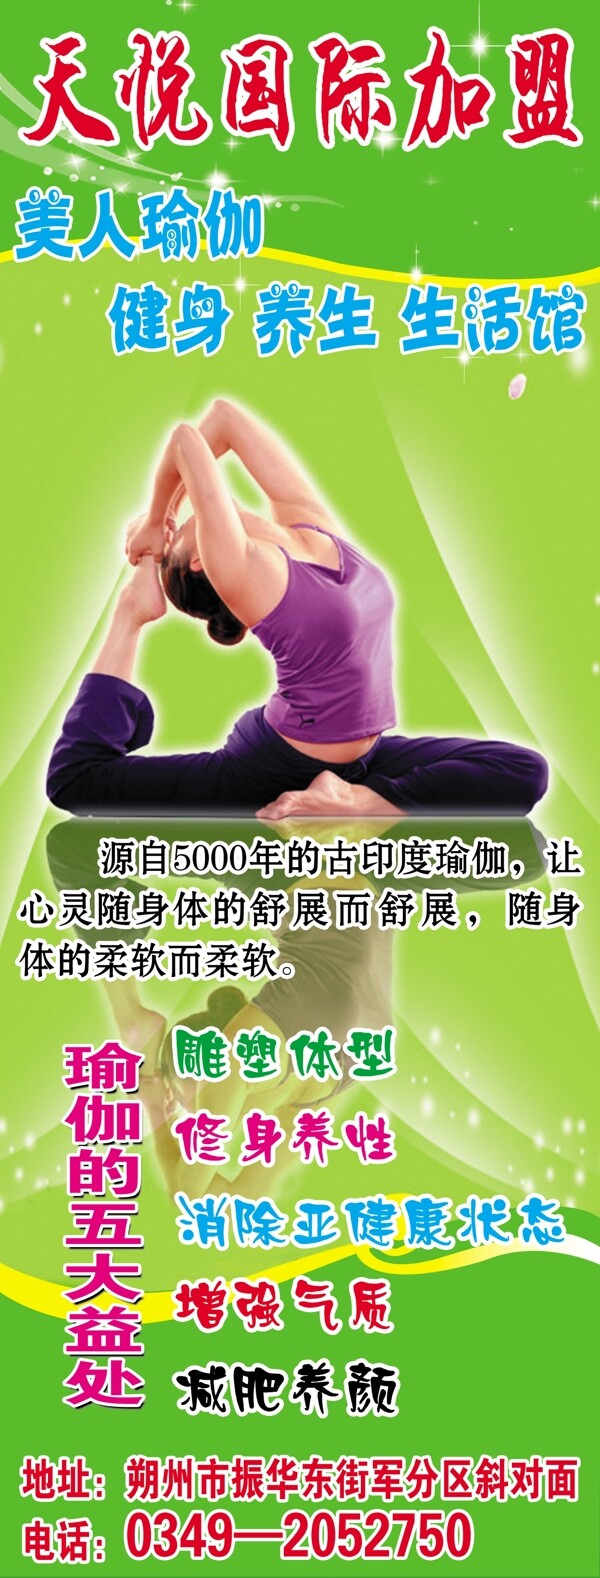 瑜伽宣传广告牌图片